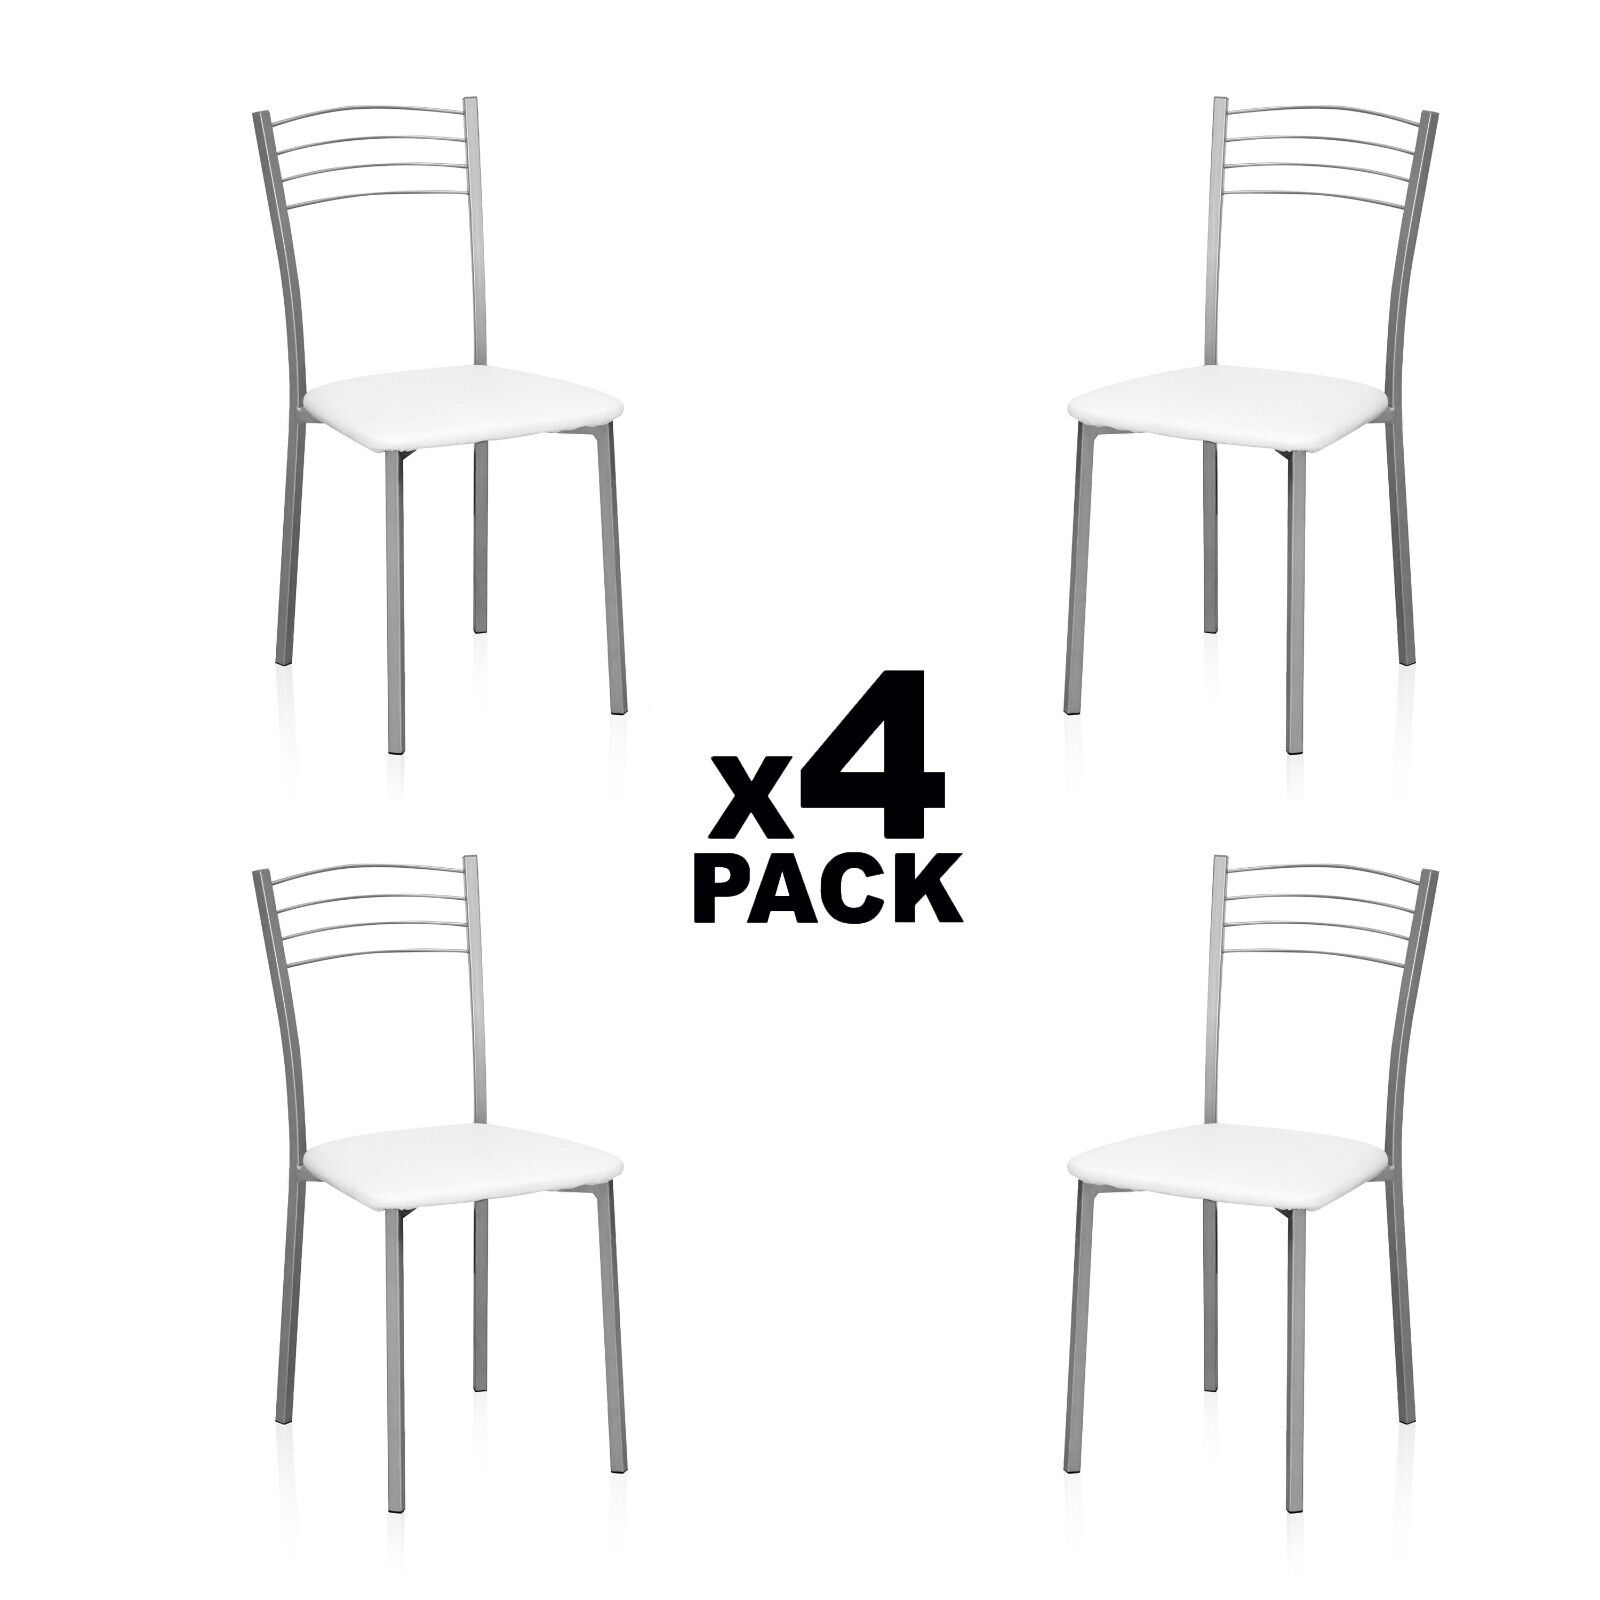 Pack 4 sillas, silla cocina moderna de comedor, Blanca y Gris, Chef